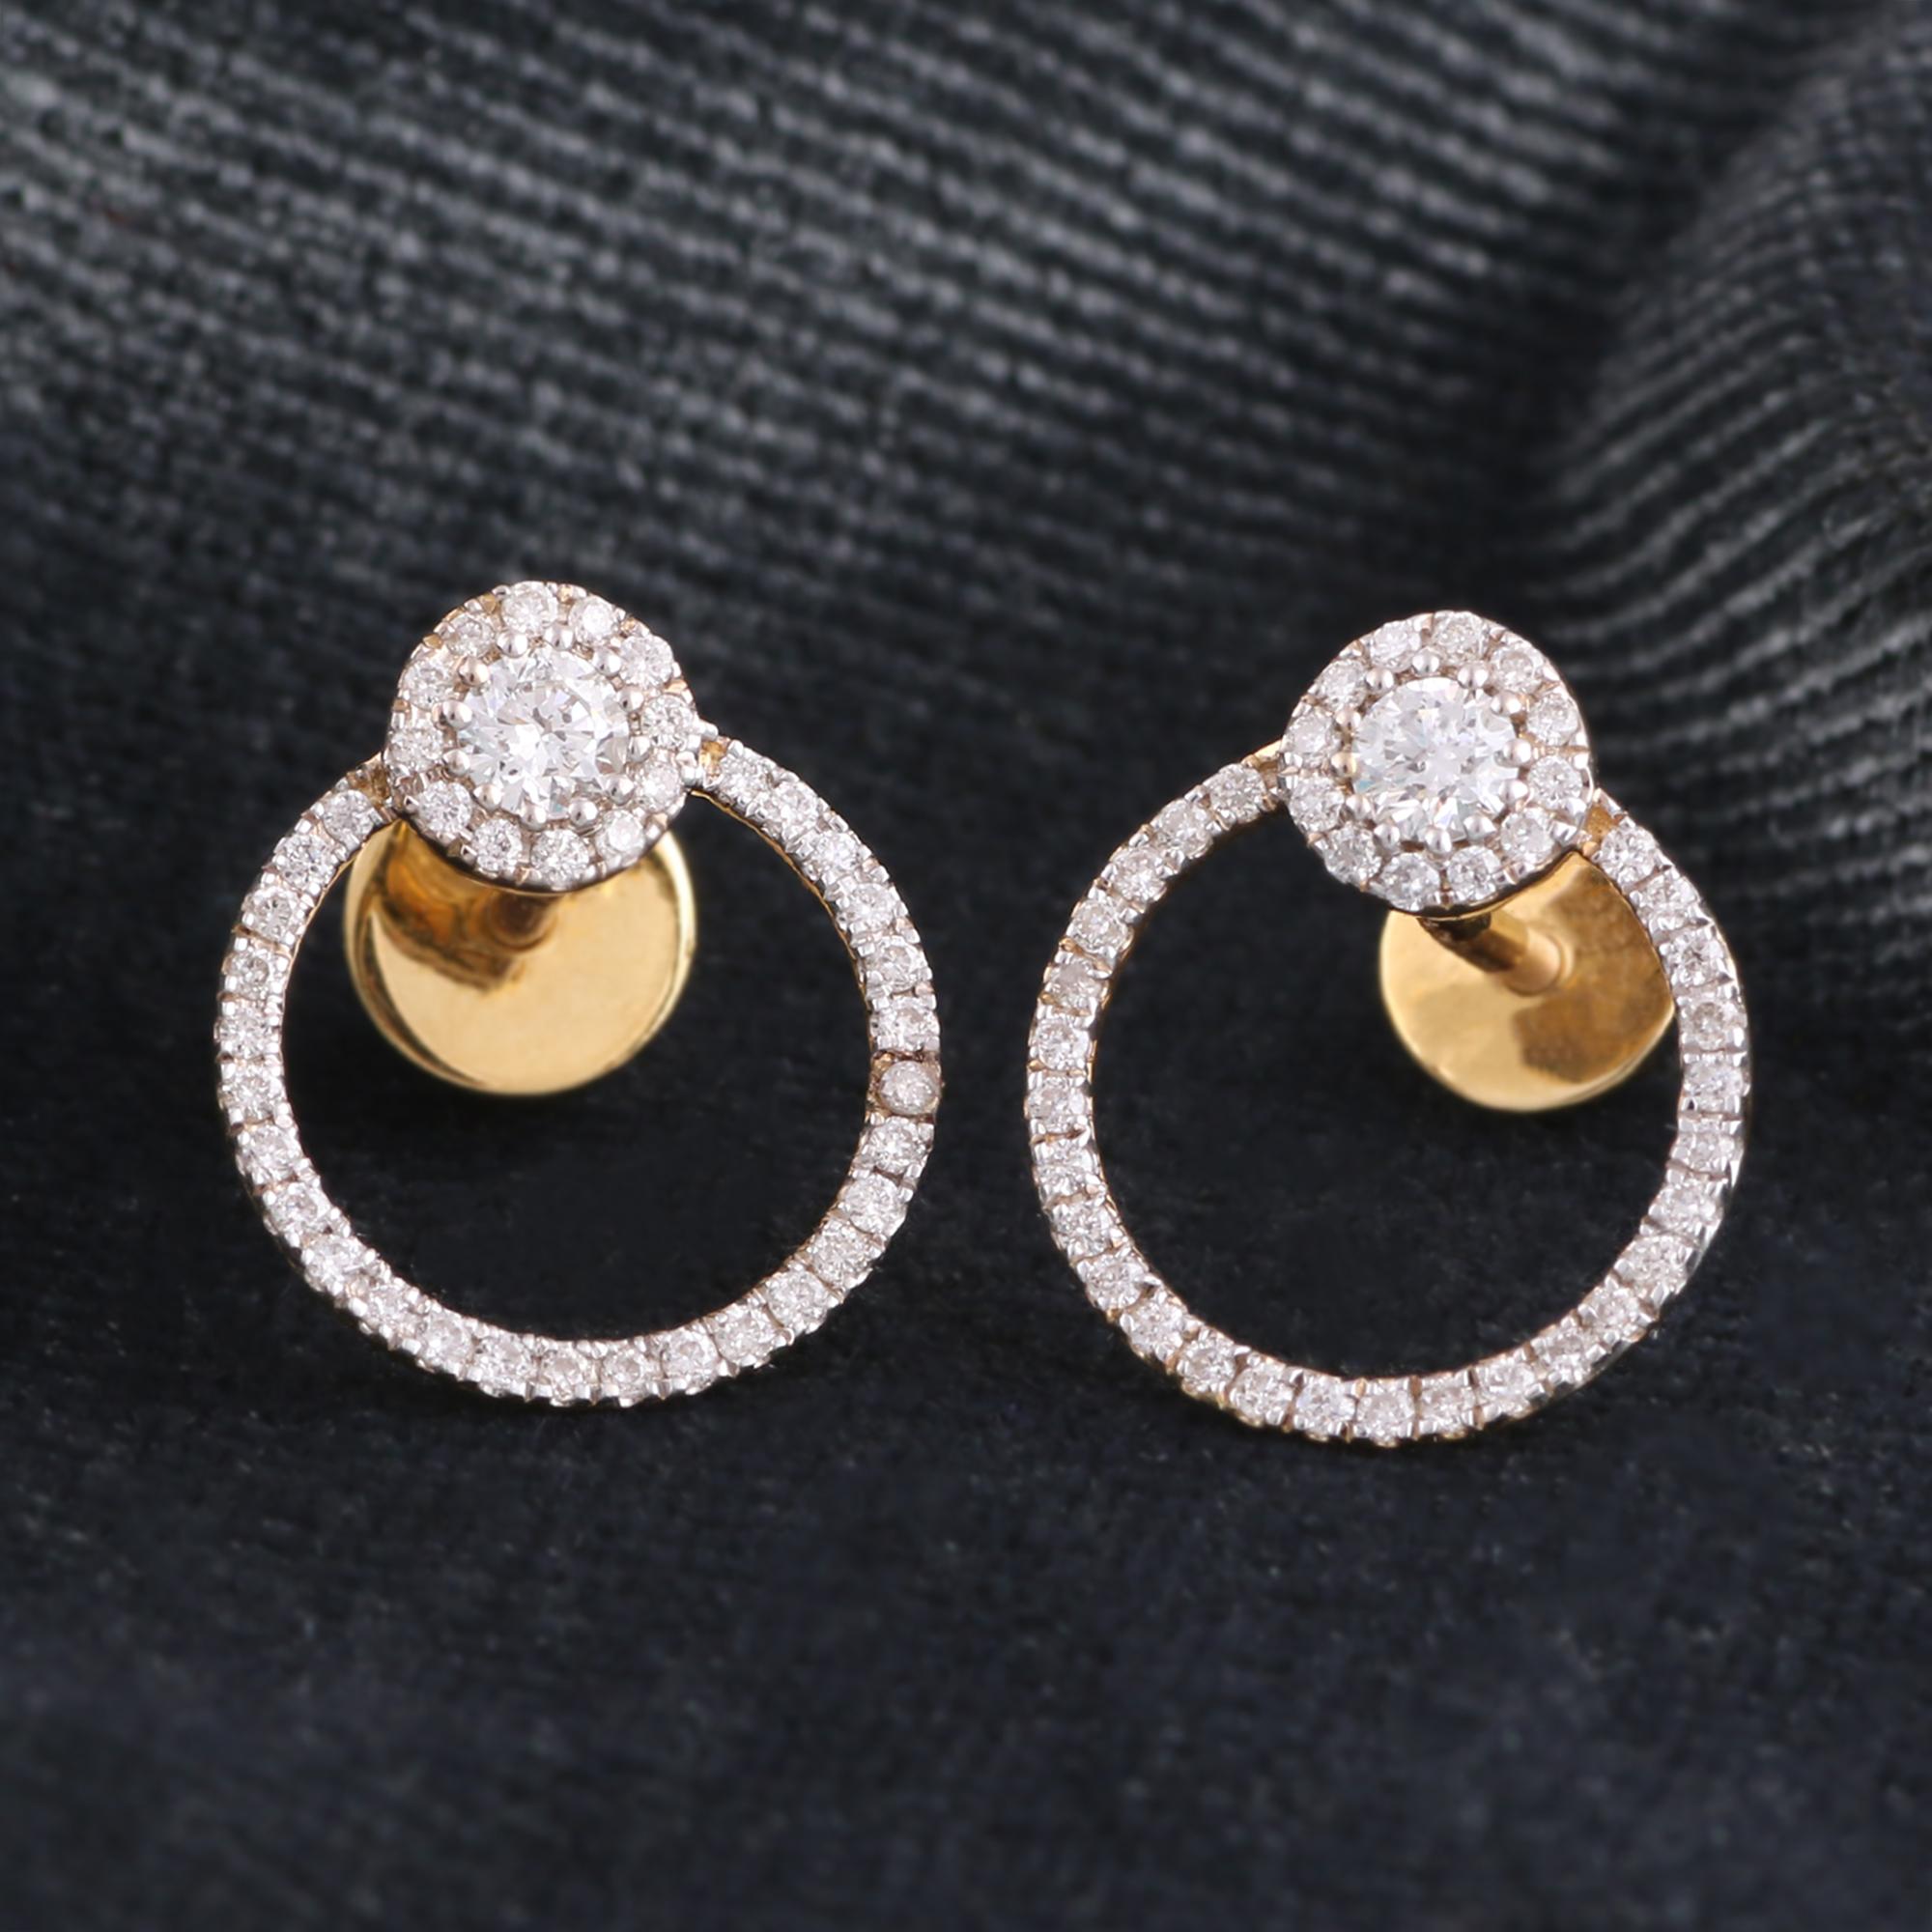 modern stud earrings designs